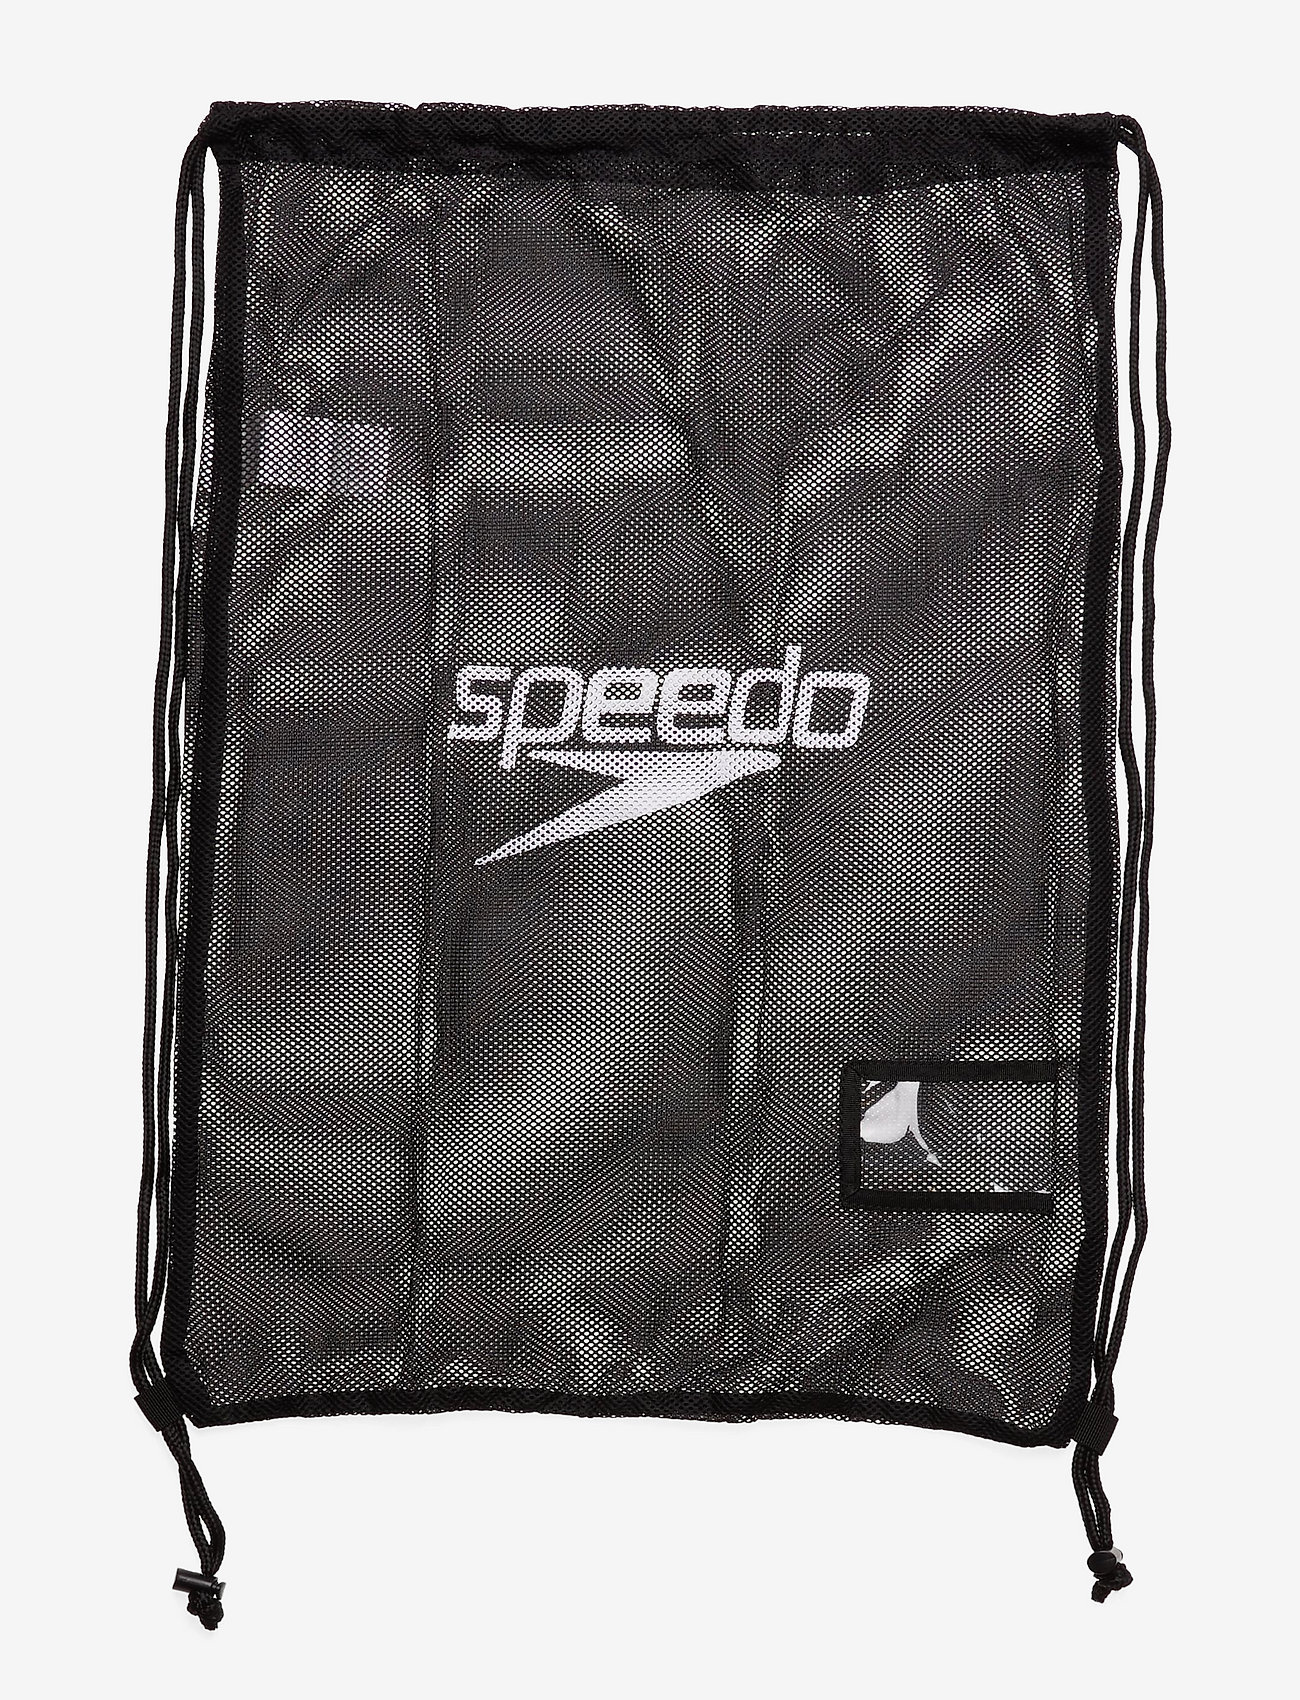 Speedo - Equip Mesh Bag XU - mažiausios kainos - black - 0